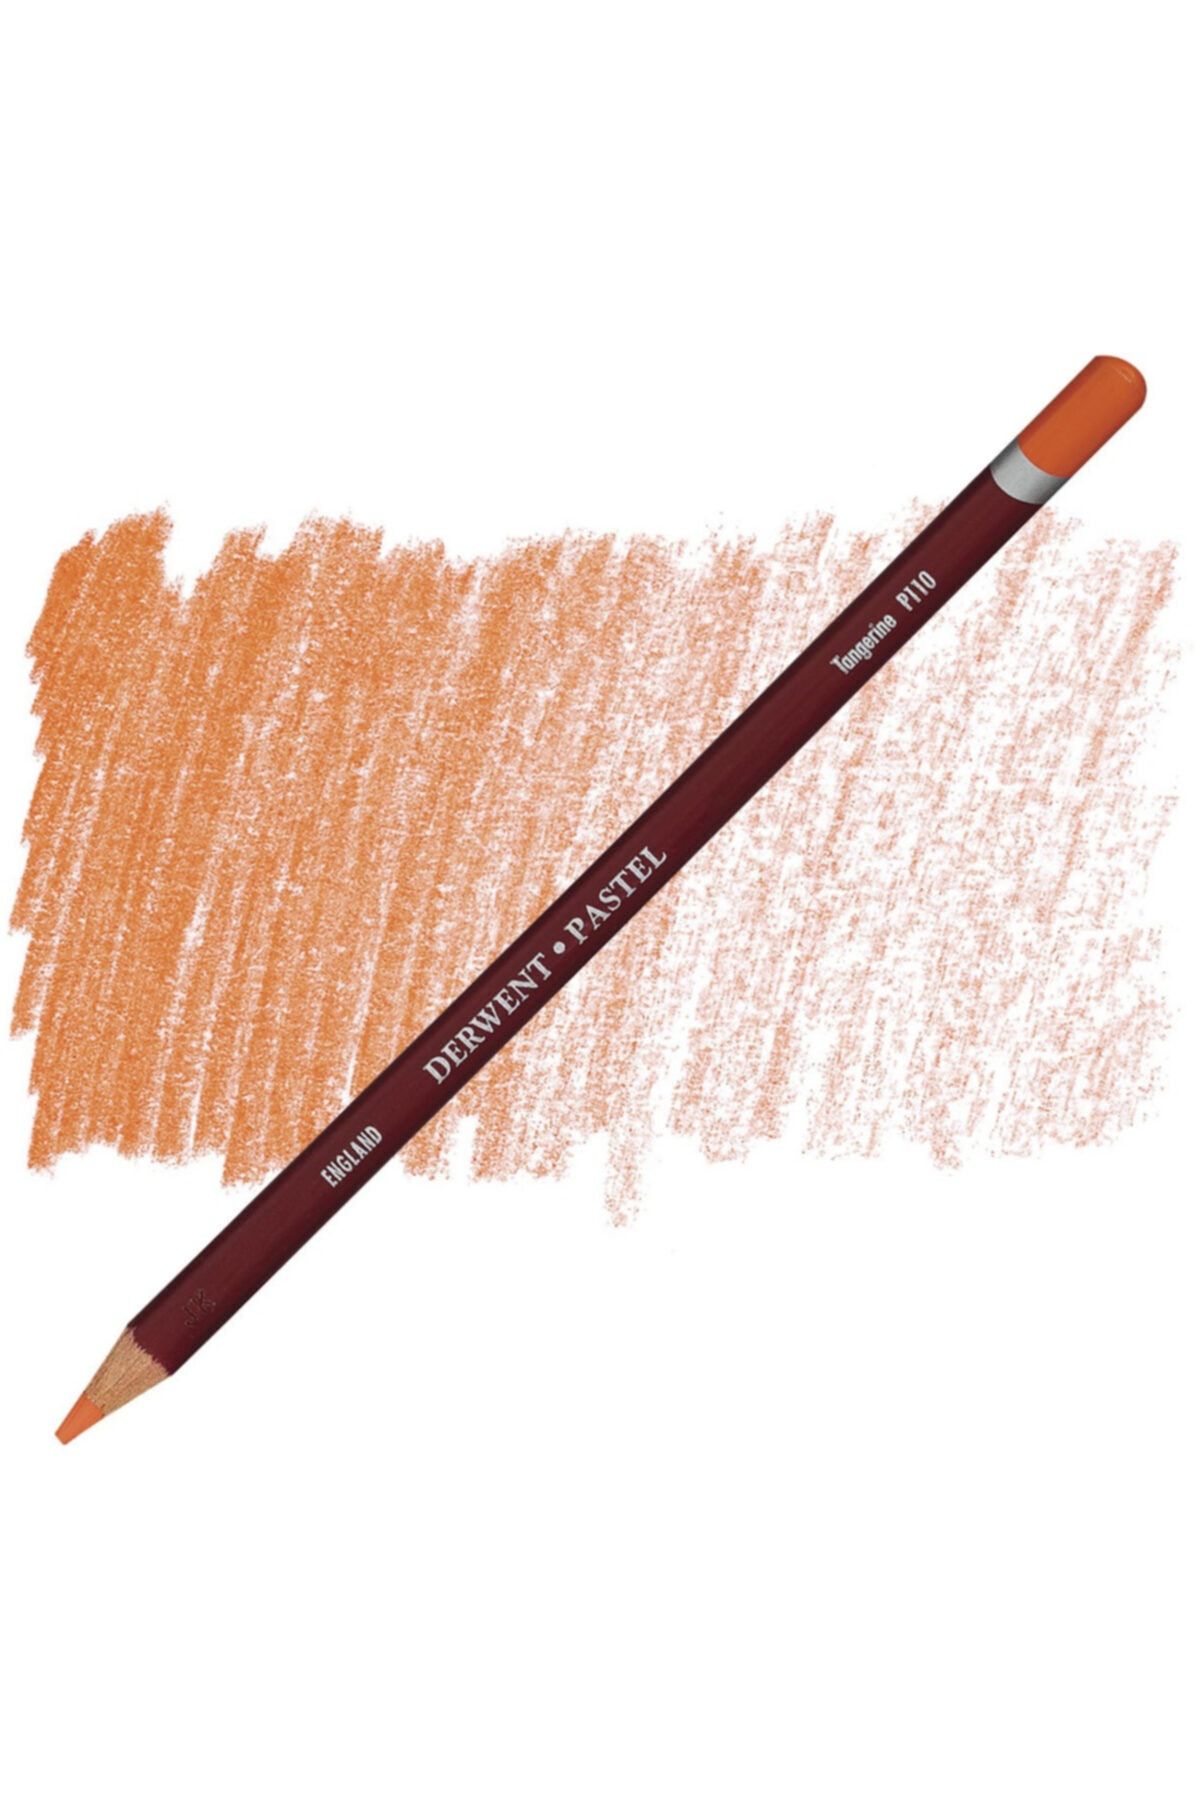 Derwent Pastel Pencil P110 Tengerine